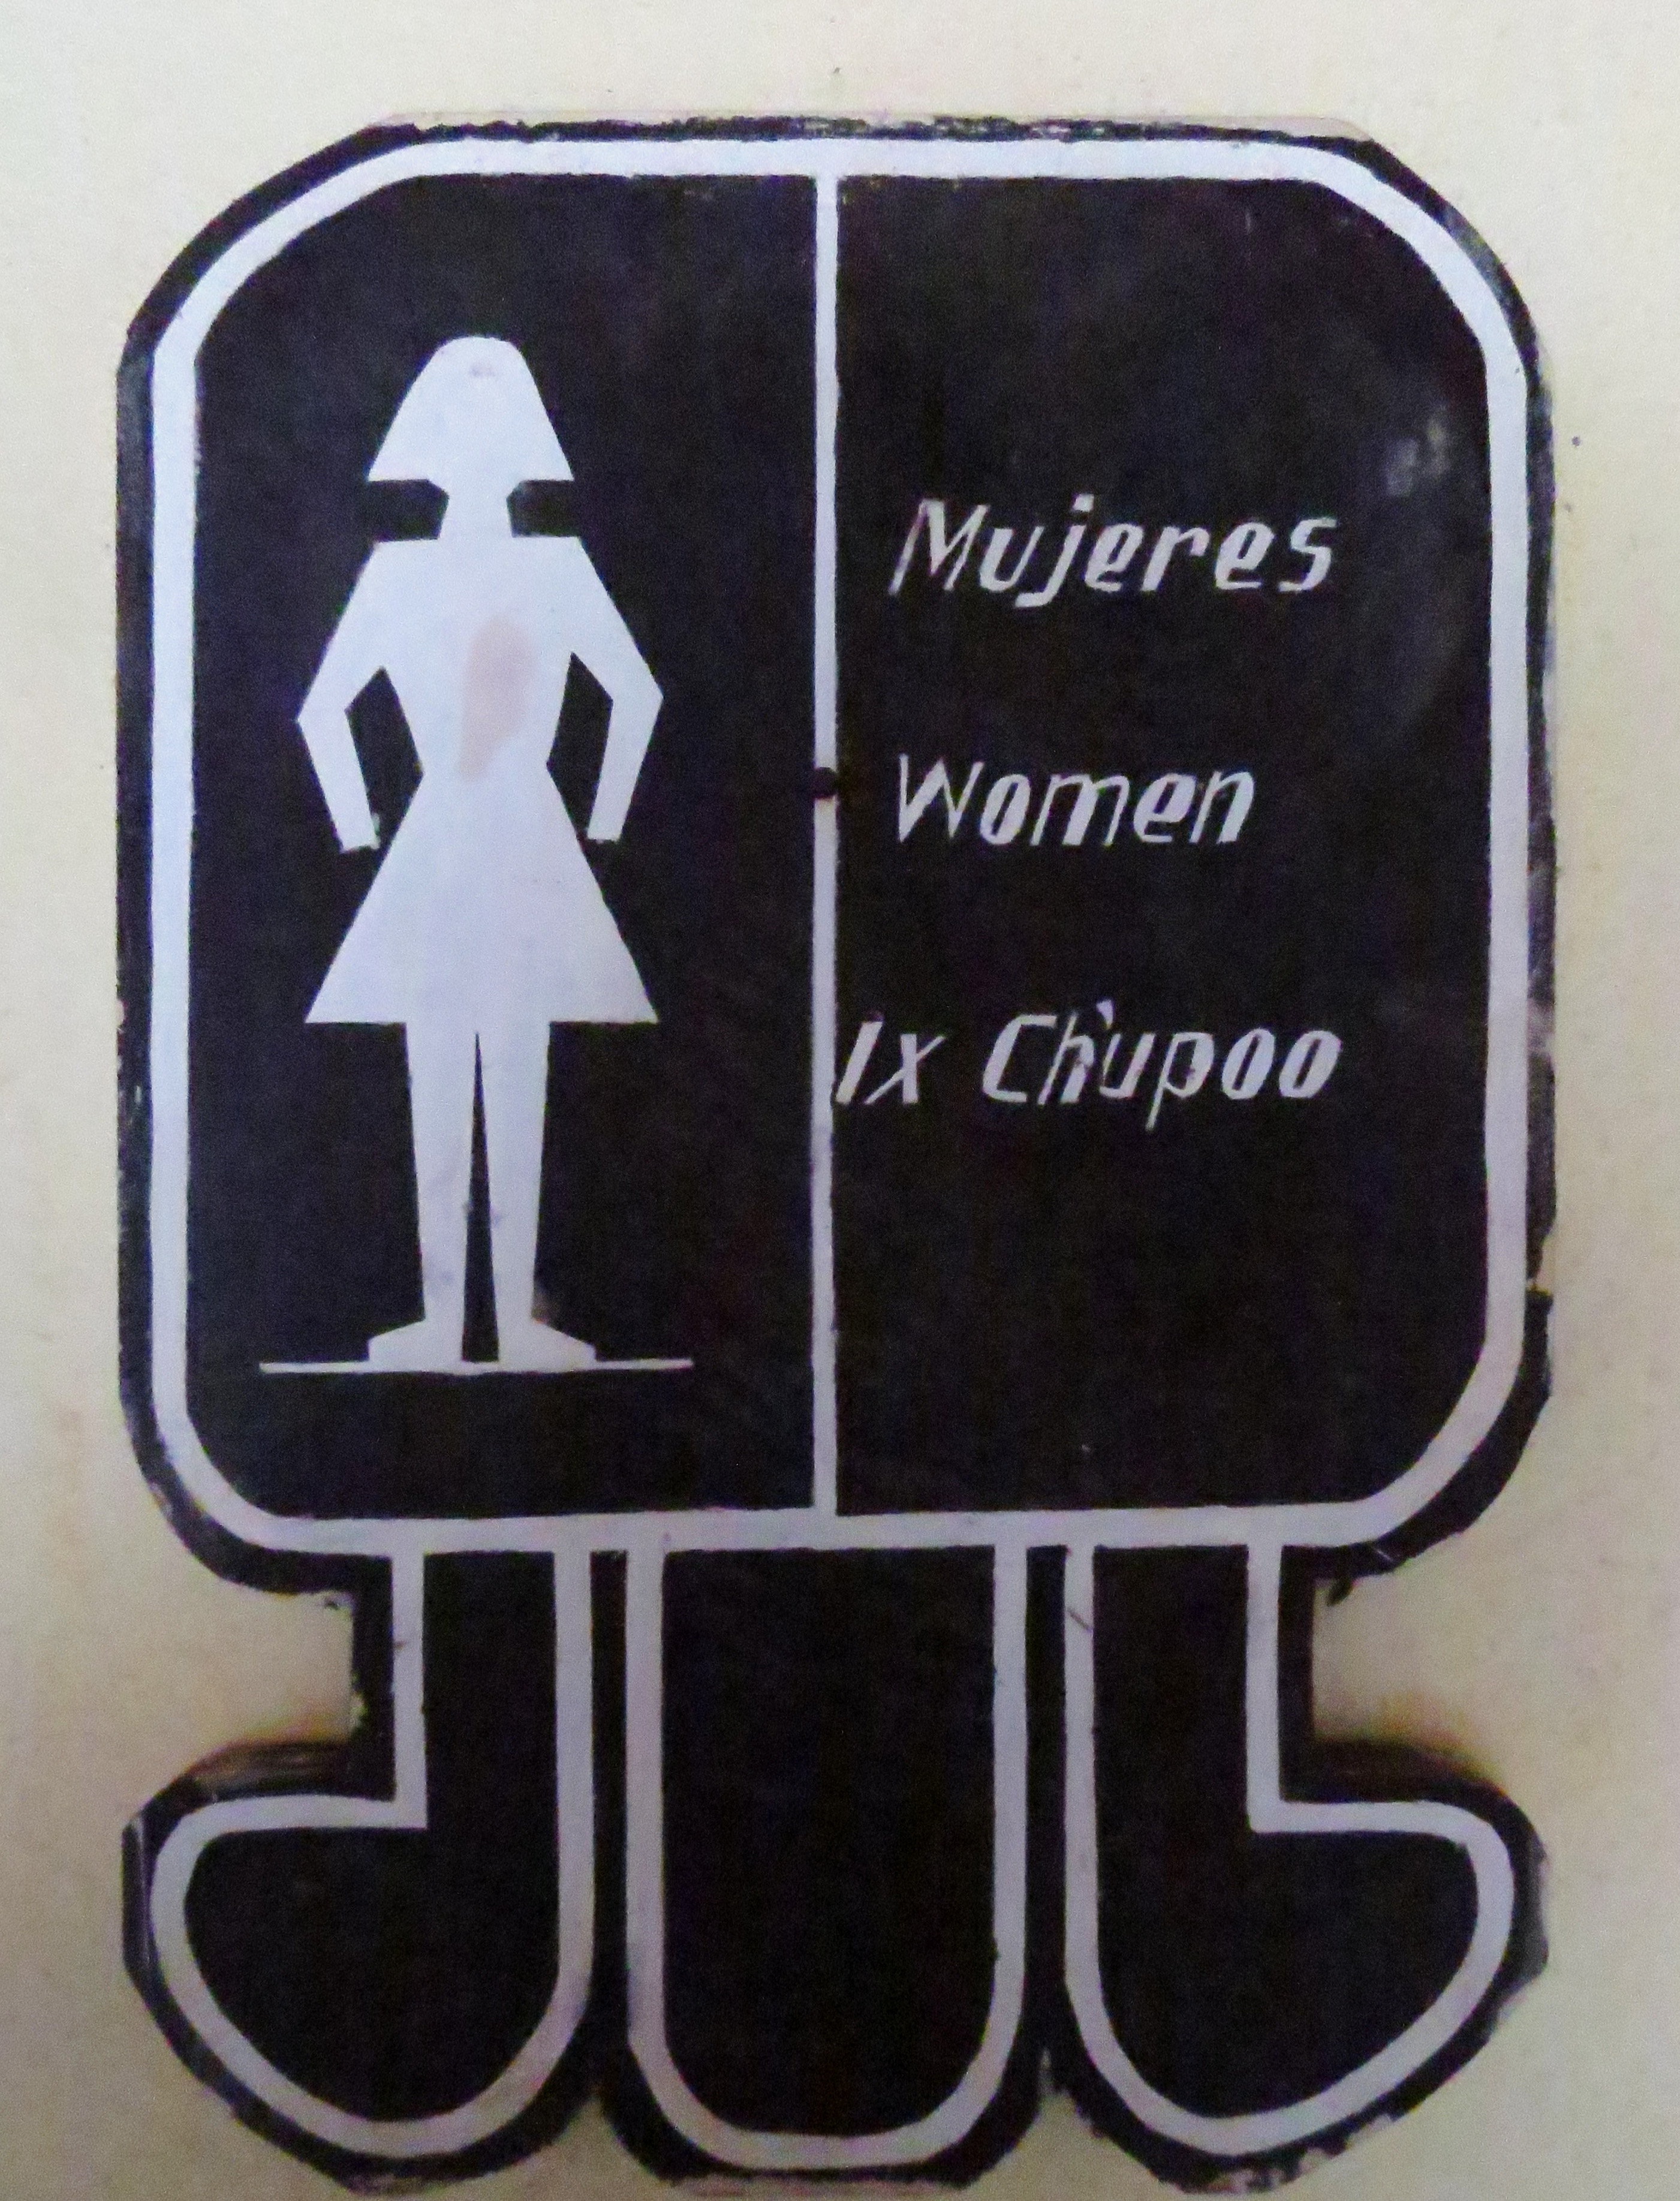 Toilettenschild in Tikal in 3 Sprachen: Spanisch, Englisch und Maya.